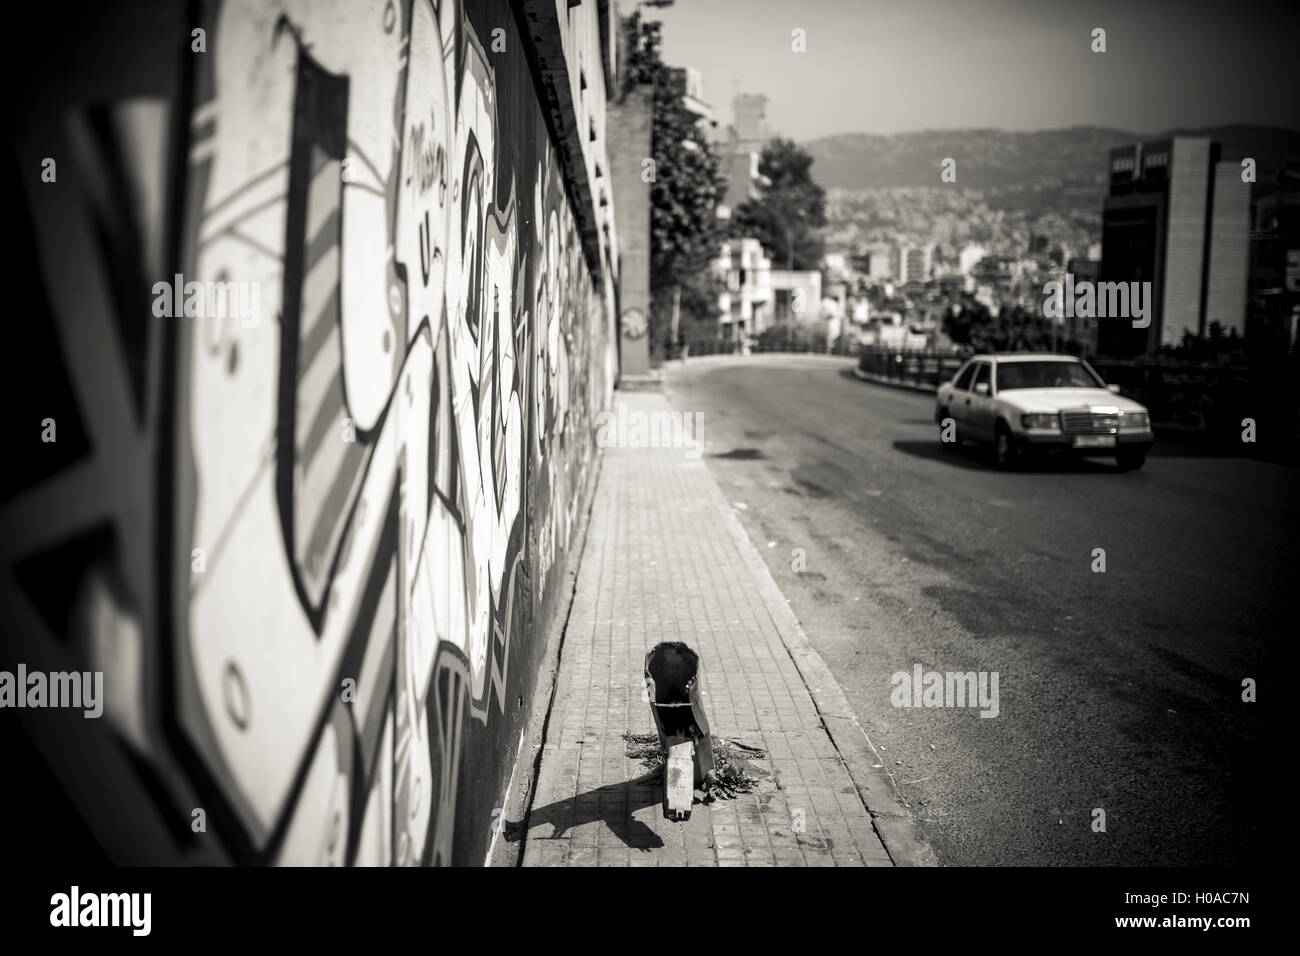 Les graffitis à Beyrouth - 10/03/2016 - Liban / Beyrouth - Geitawi, Beyrouth, mars 2016. Sup-C (à gauche). Wall writen en hommage de Meuh, qui était de quitter le Liban. - Bilal Tarabey / Le Pictorium Banque D'Images